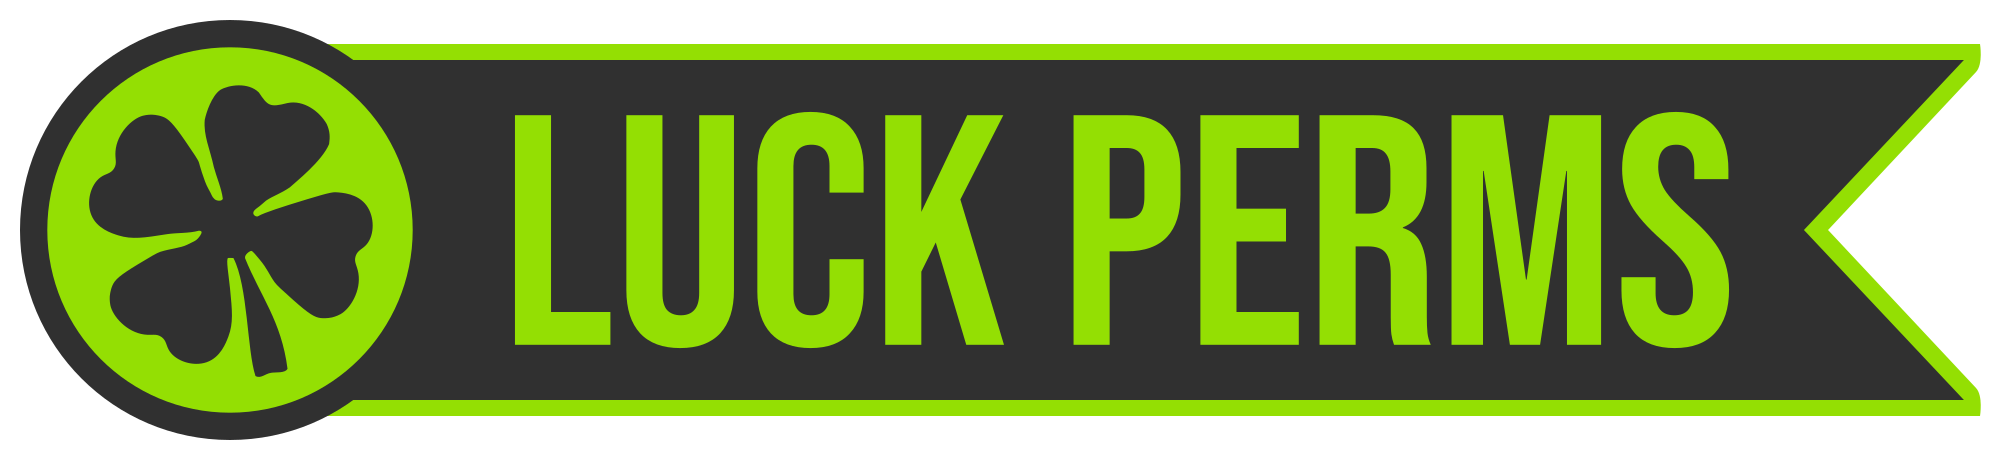 LuckPerm banner.png